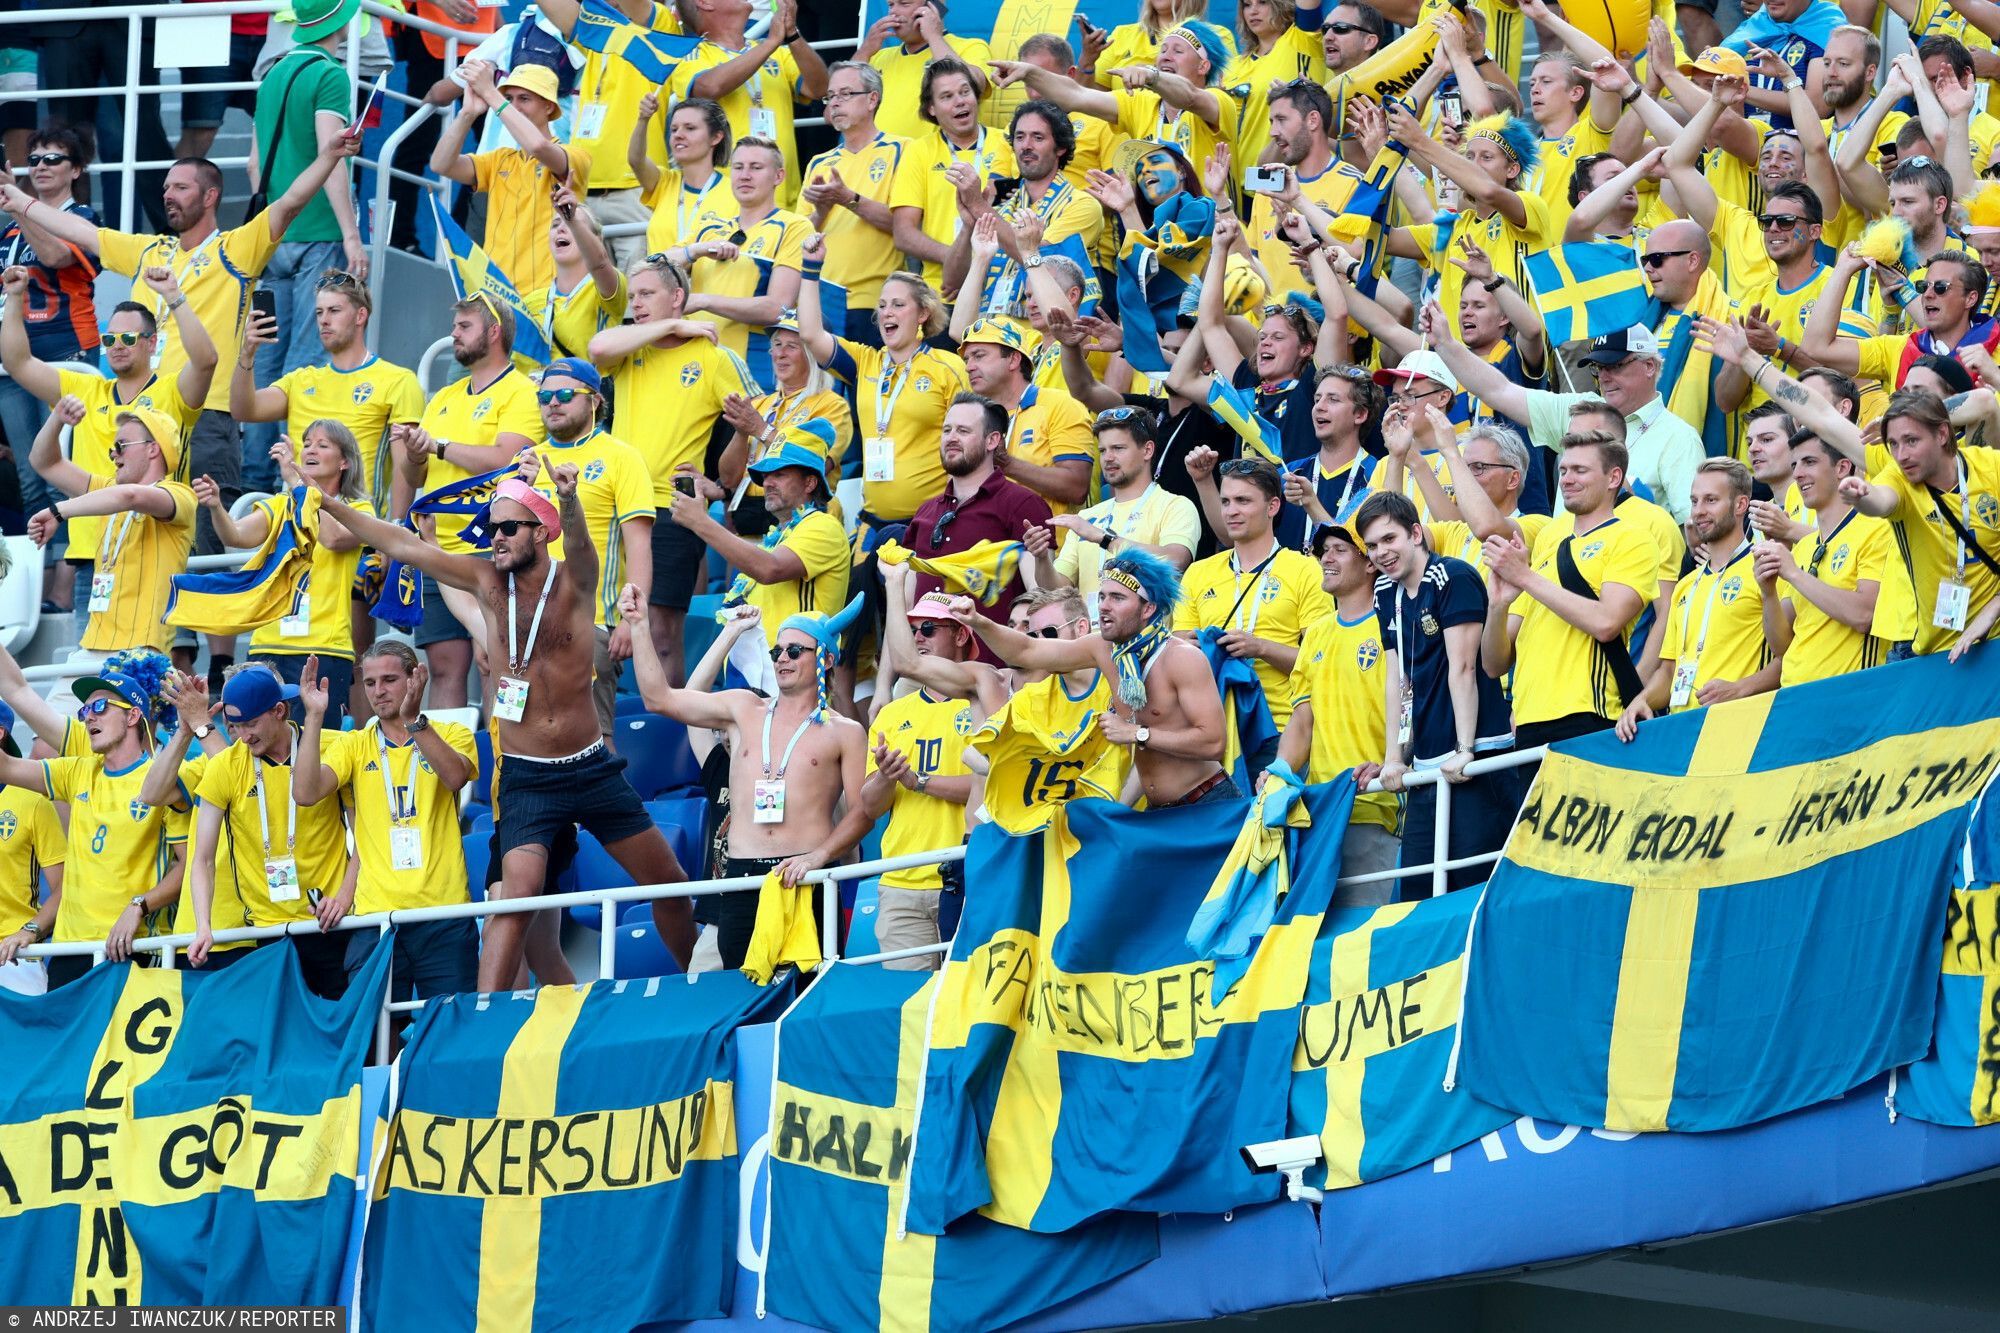 18.06.2018 Rosja Nizny Nowogrod Mistrzostwa Swiata w pilce noznej Grupa F Mecz Szwecja - Korea Poludniowa N/z kibice szwecji Fot. Andrzej Iwanczuk/REPORTER --------------==========--------------- 2018 FIFA World Cup Group F Sweden vs Korea Republic on Jun